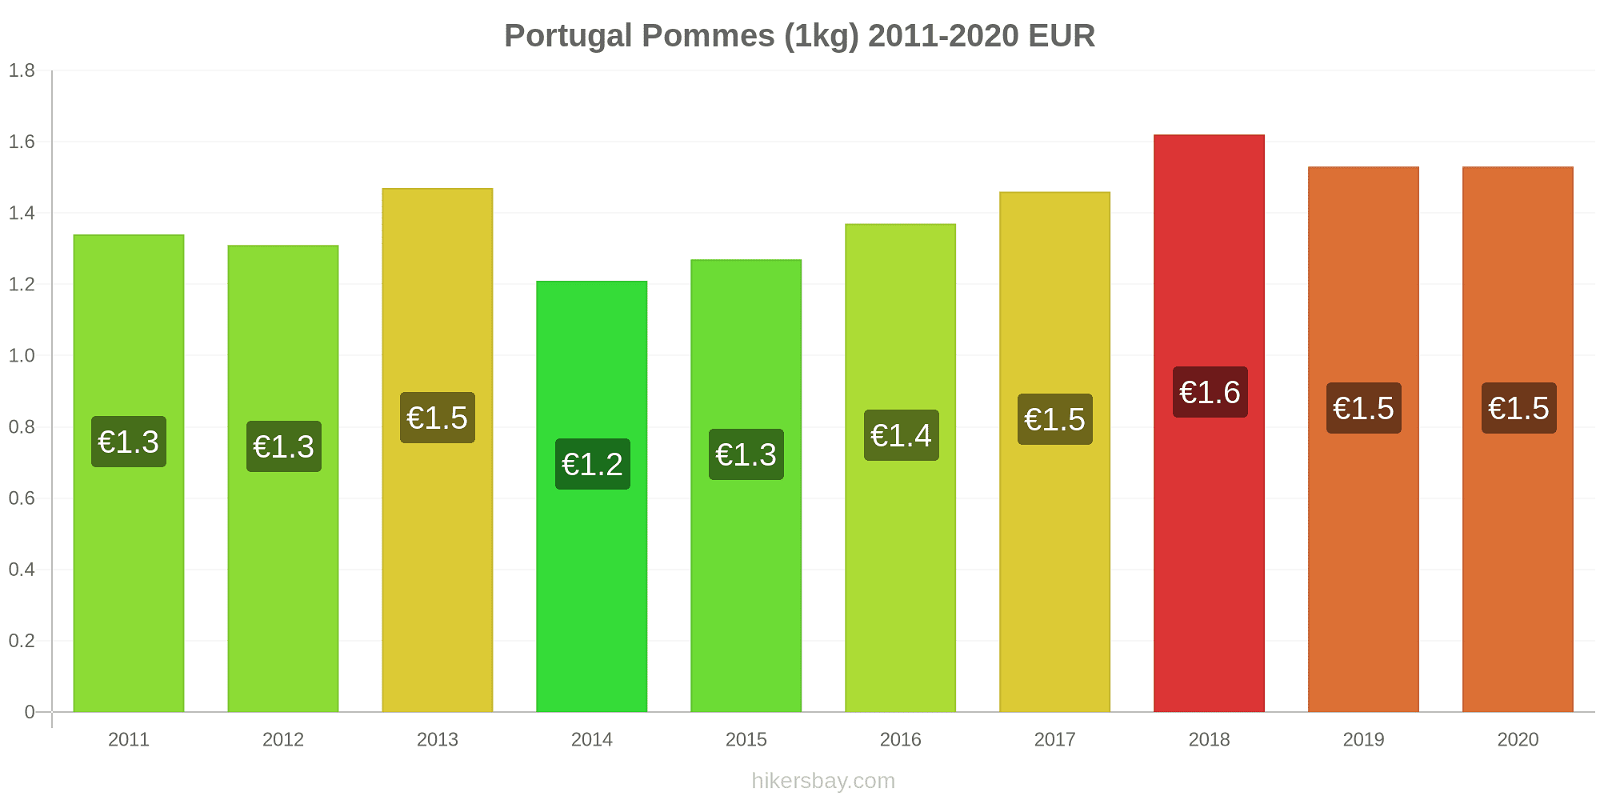 Portugal changements de prix Pommes (1kg) hikersbay.com